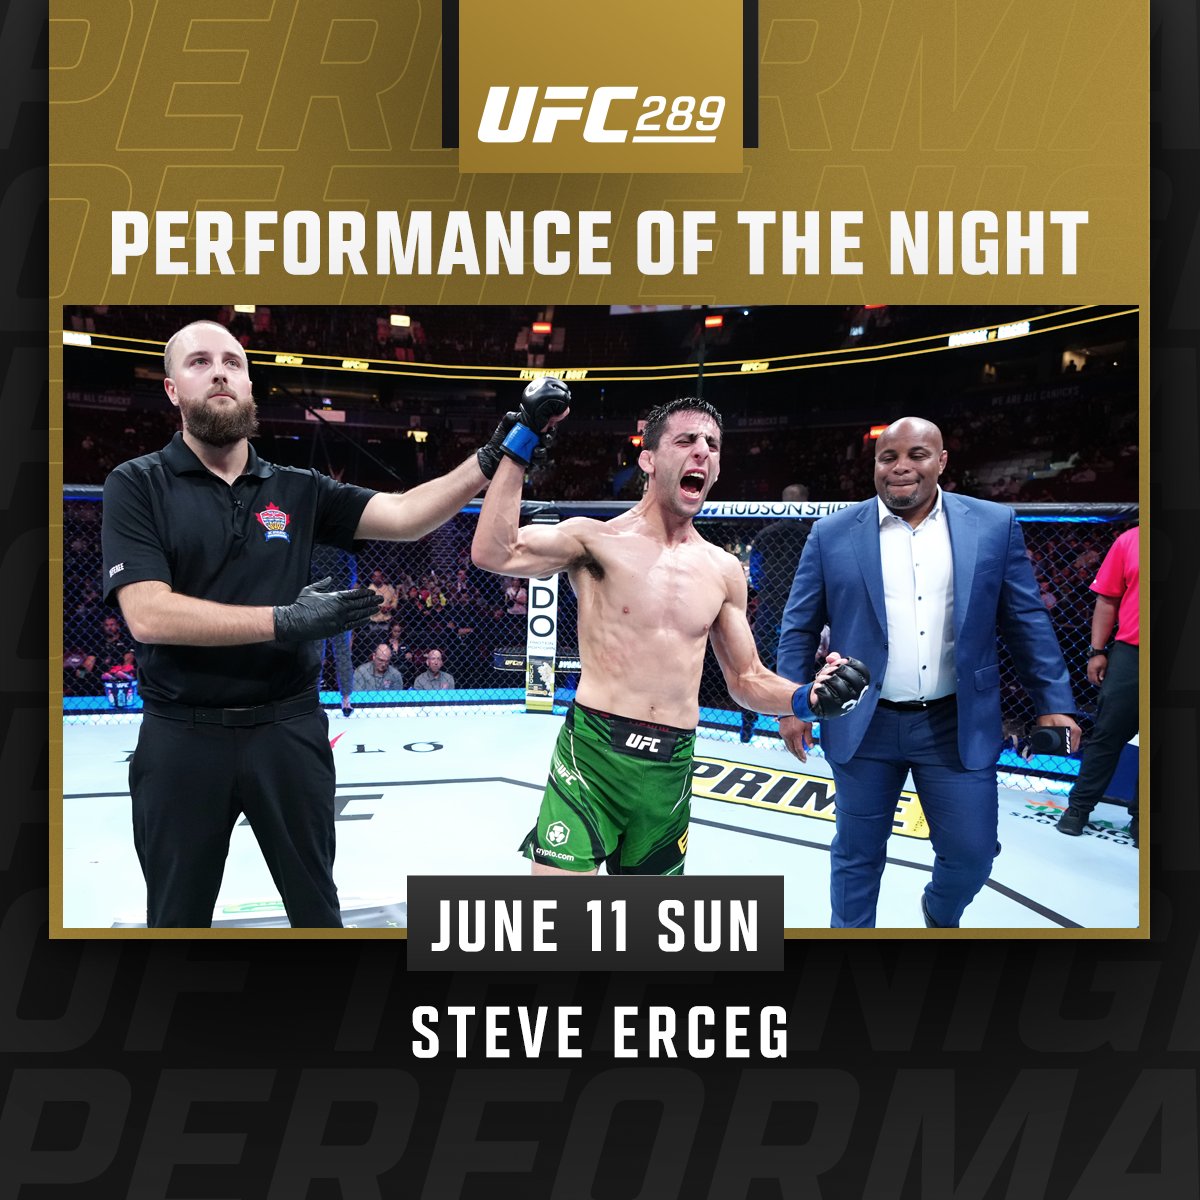 UFC 289 - Steve Erceg